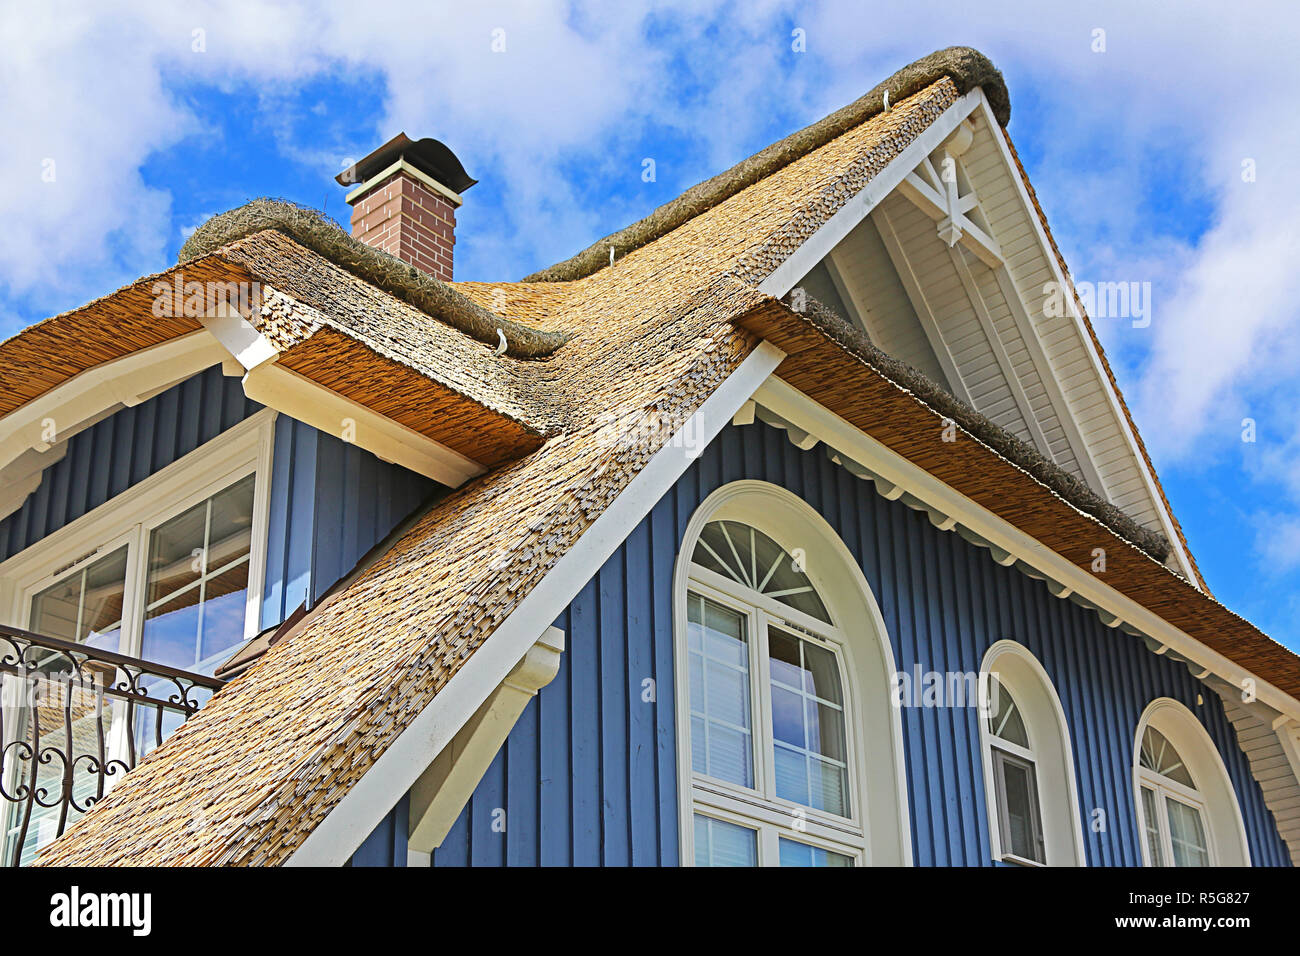 Maison bleue sur la mer Baltique avec toit de chaume Banque D'Images